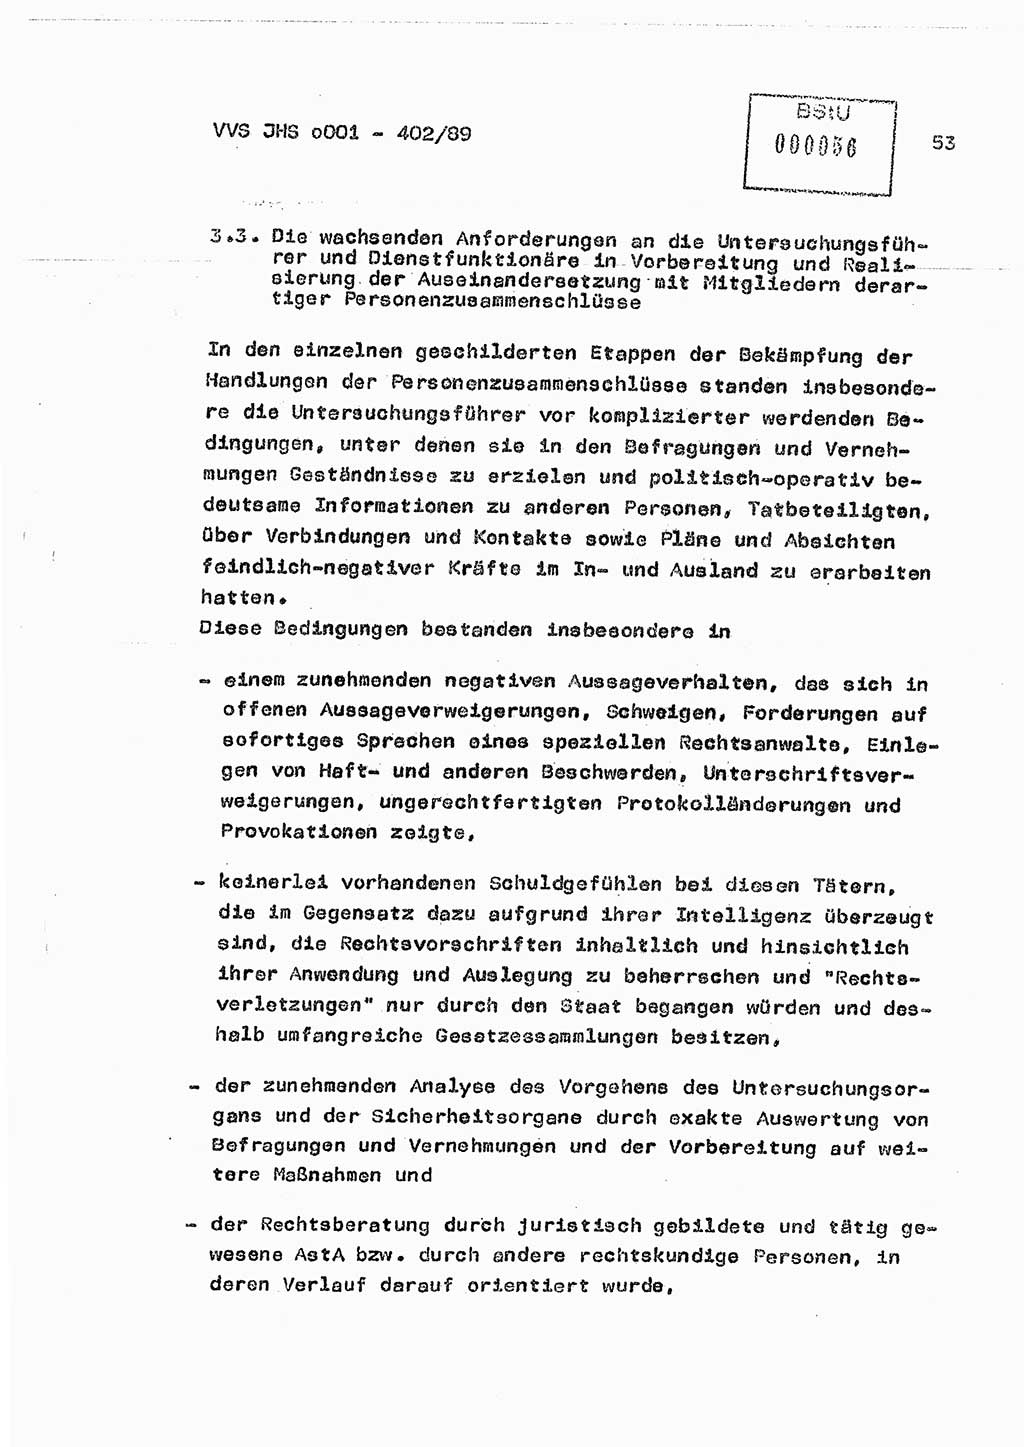 Diplomarbeit Major Günter Müller (HA Ⅸ/9), Ministerium für Staatssicherheit (MfS) [Deutsche Demokratische Republik (DDR)], Juristische Hochschule (JHS), Vertrauliche Verschlußsache (VVS) o001-402/89, Potsdam 1989, Seite 53 (Dipl.-Arb. MfS DDR JHS VVS o001-402/89 1989, S. 53)